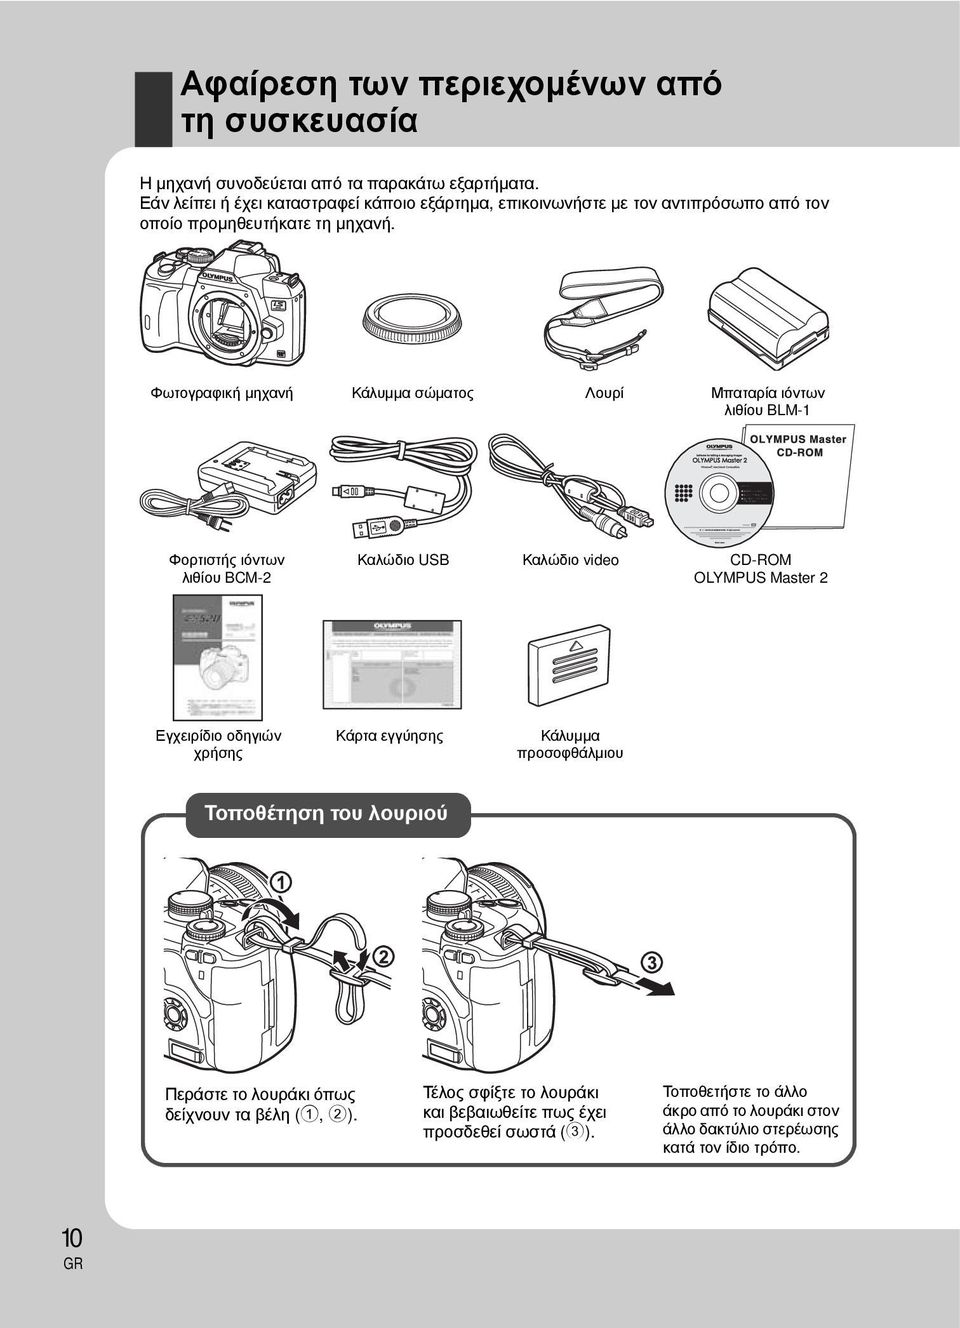 Φωτογραφική μηχανή Κάλυμμα σώματος Λουρί Μπαταρία ιόντων λιθίου BLM-1 Φορτιστής ιόντων λιθίου BCM-2 Καλώδιο USB Καλώδιο video CD-ROM OLYMPUS Master 2 Εγχειρίδιο